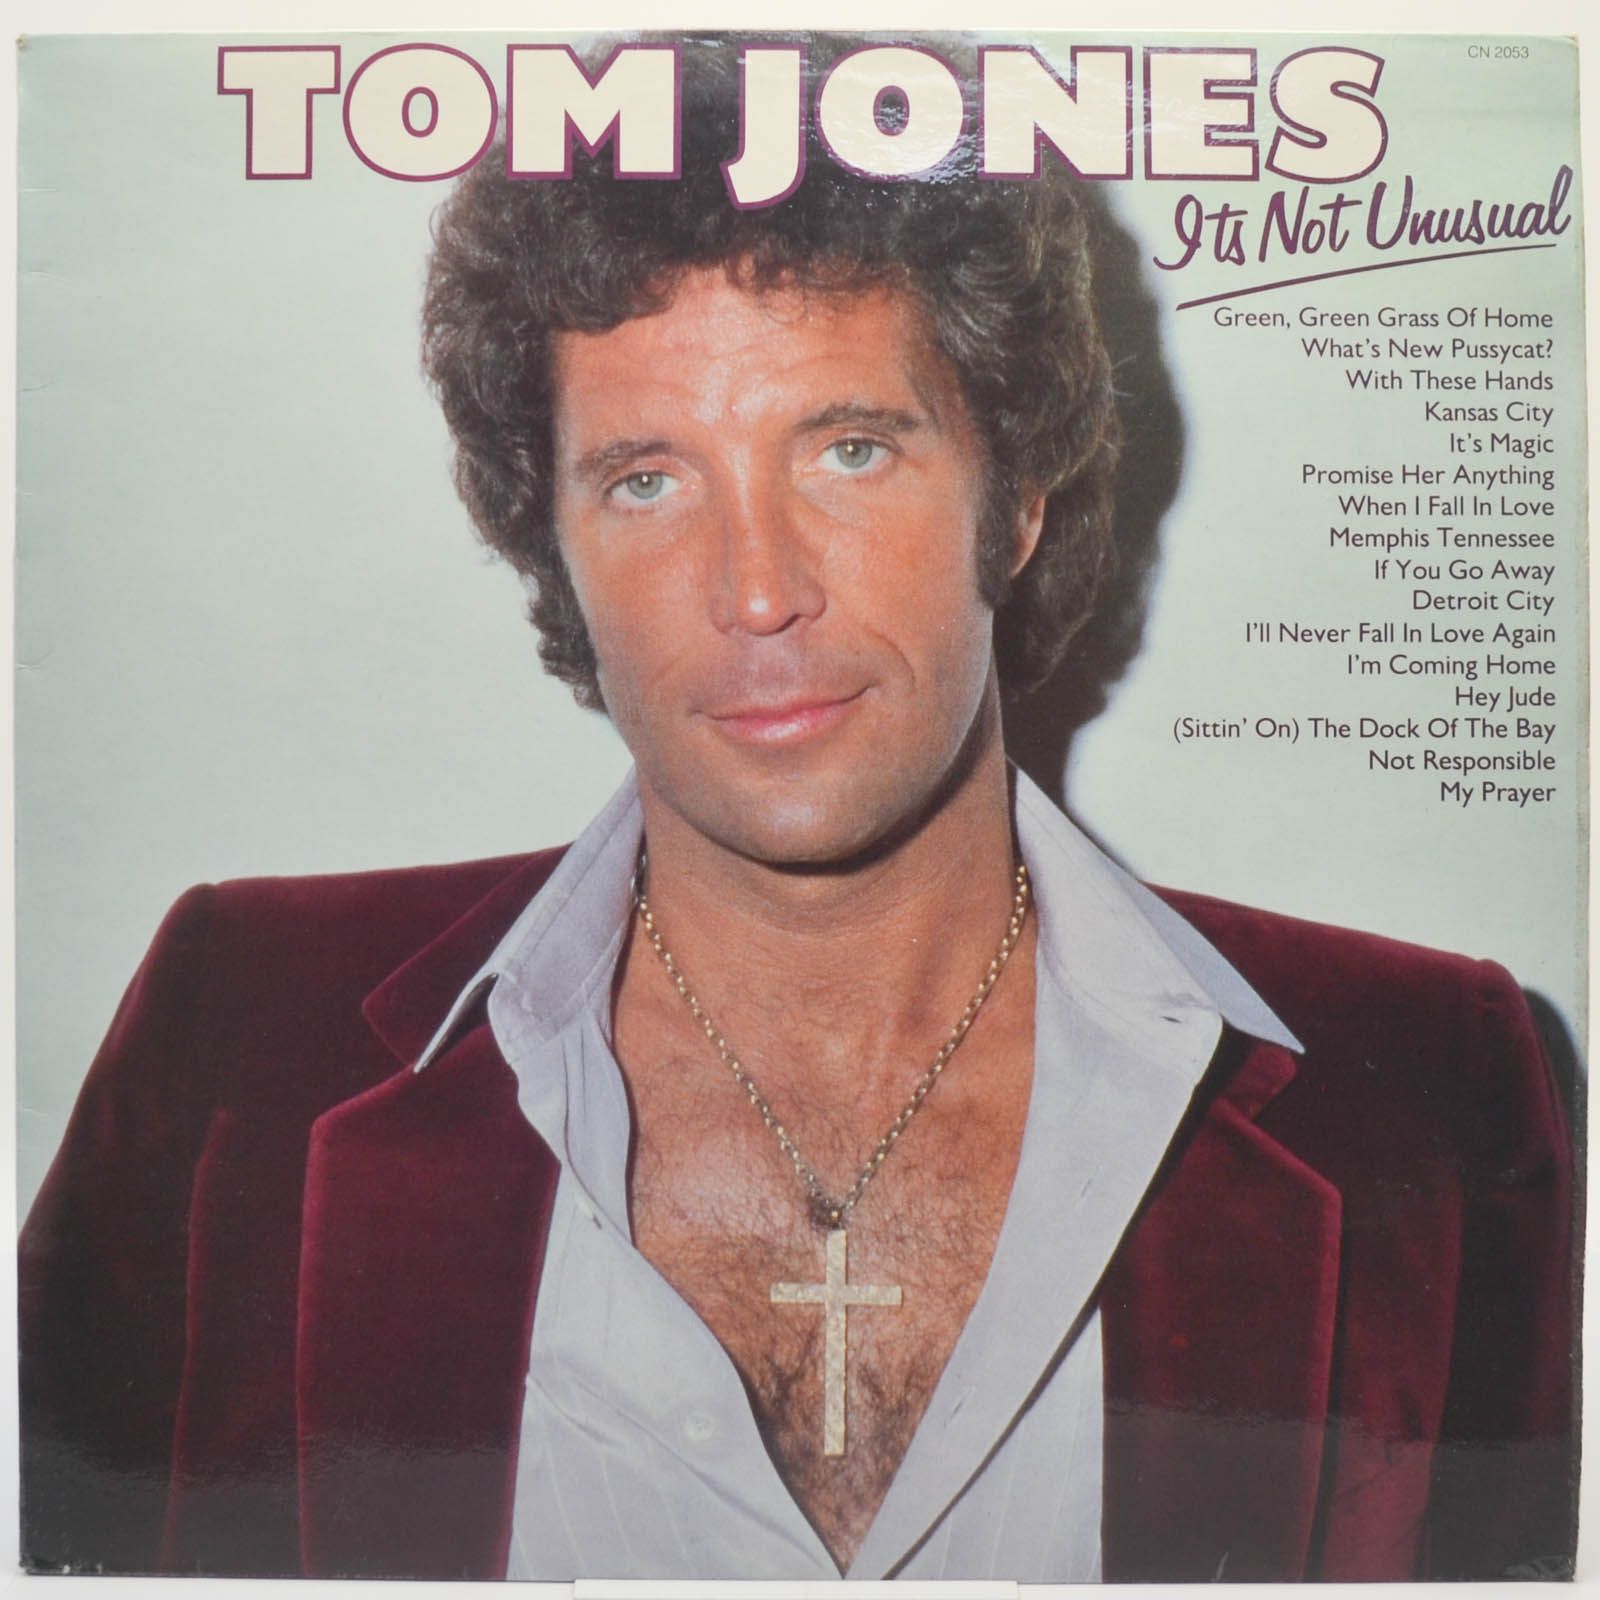 Tom Jones — It's Not Unusual (UK), 1982